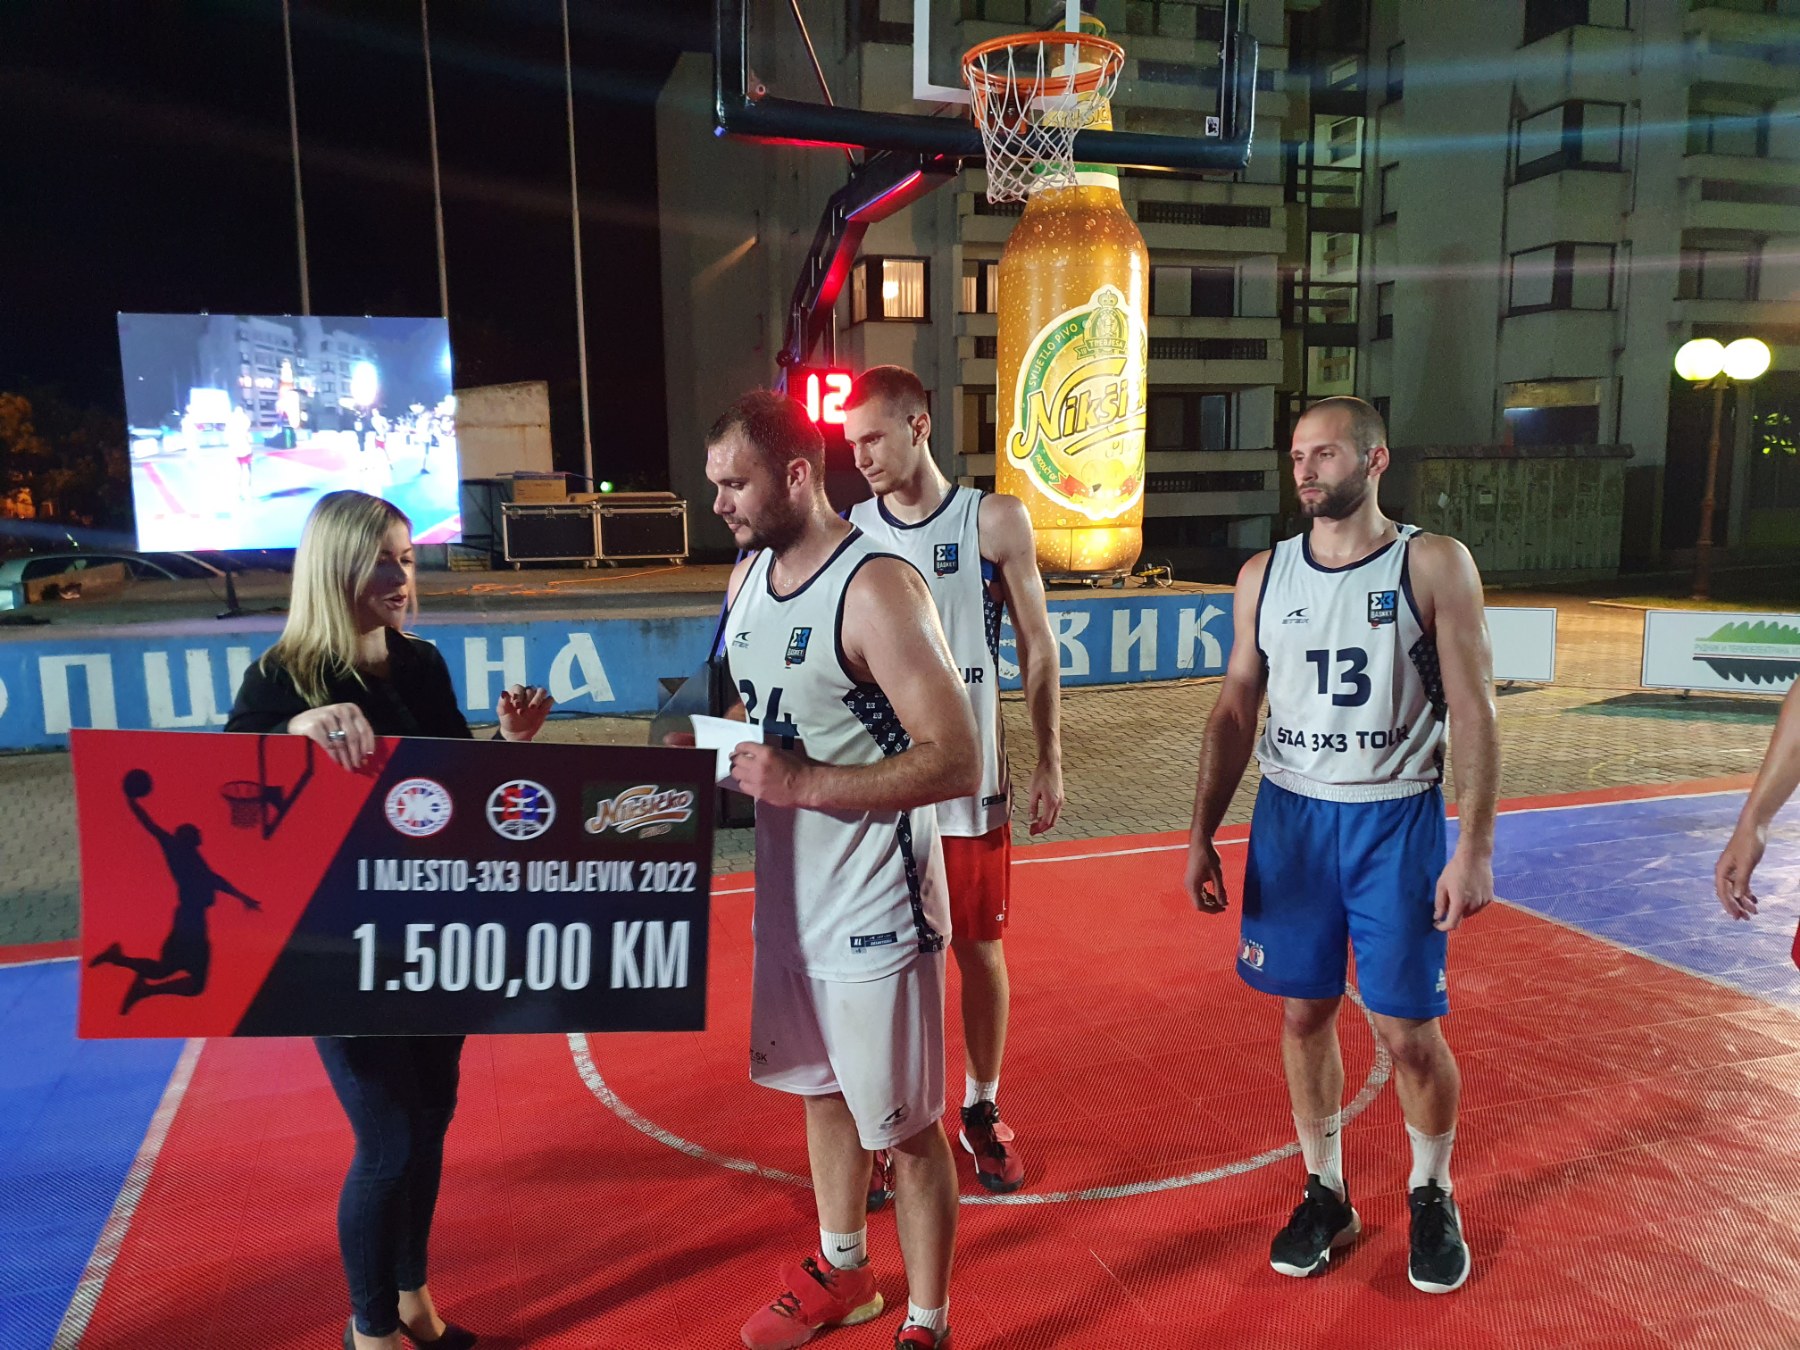 Afirmacija sporta, Ugljevik bio domaćin Međunarodnog turnira uličnog basketa 3×3